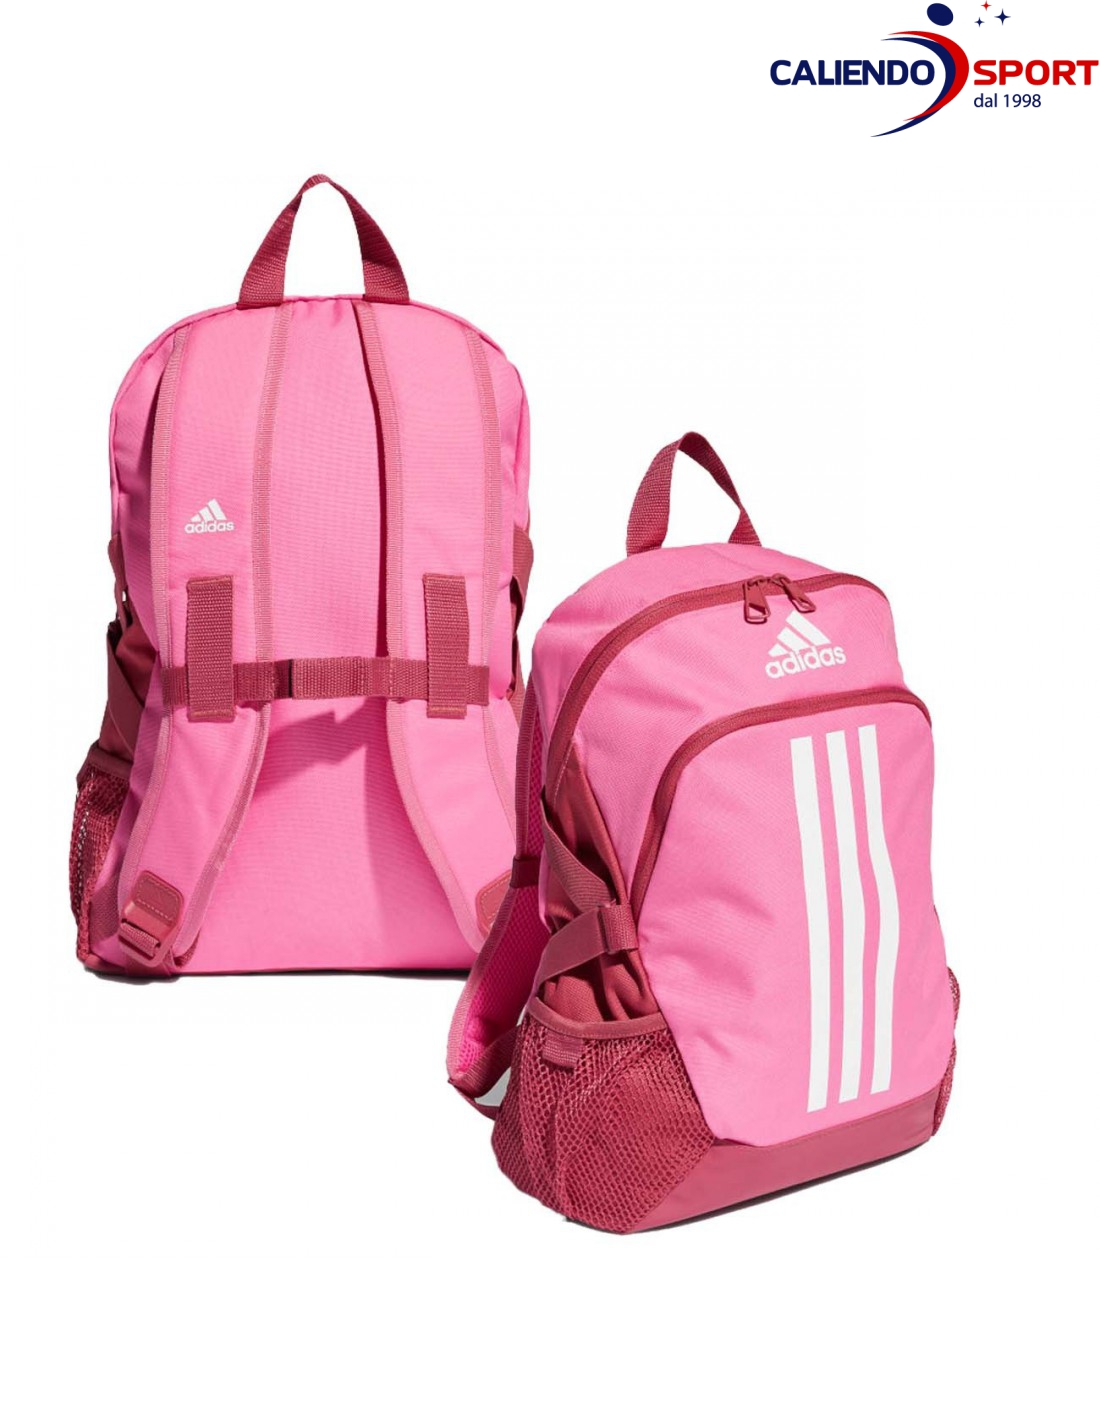 adidas rosa mochila